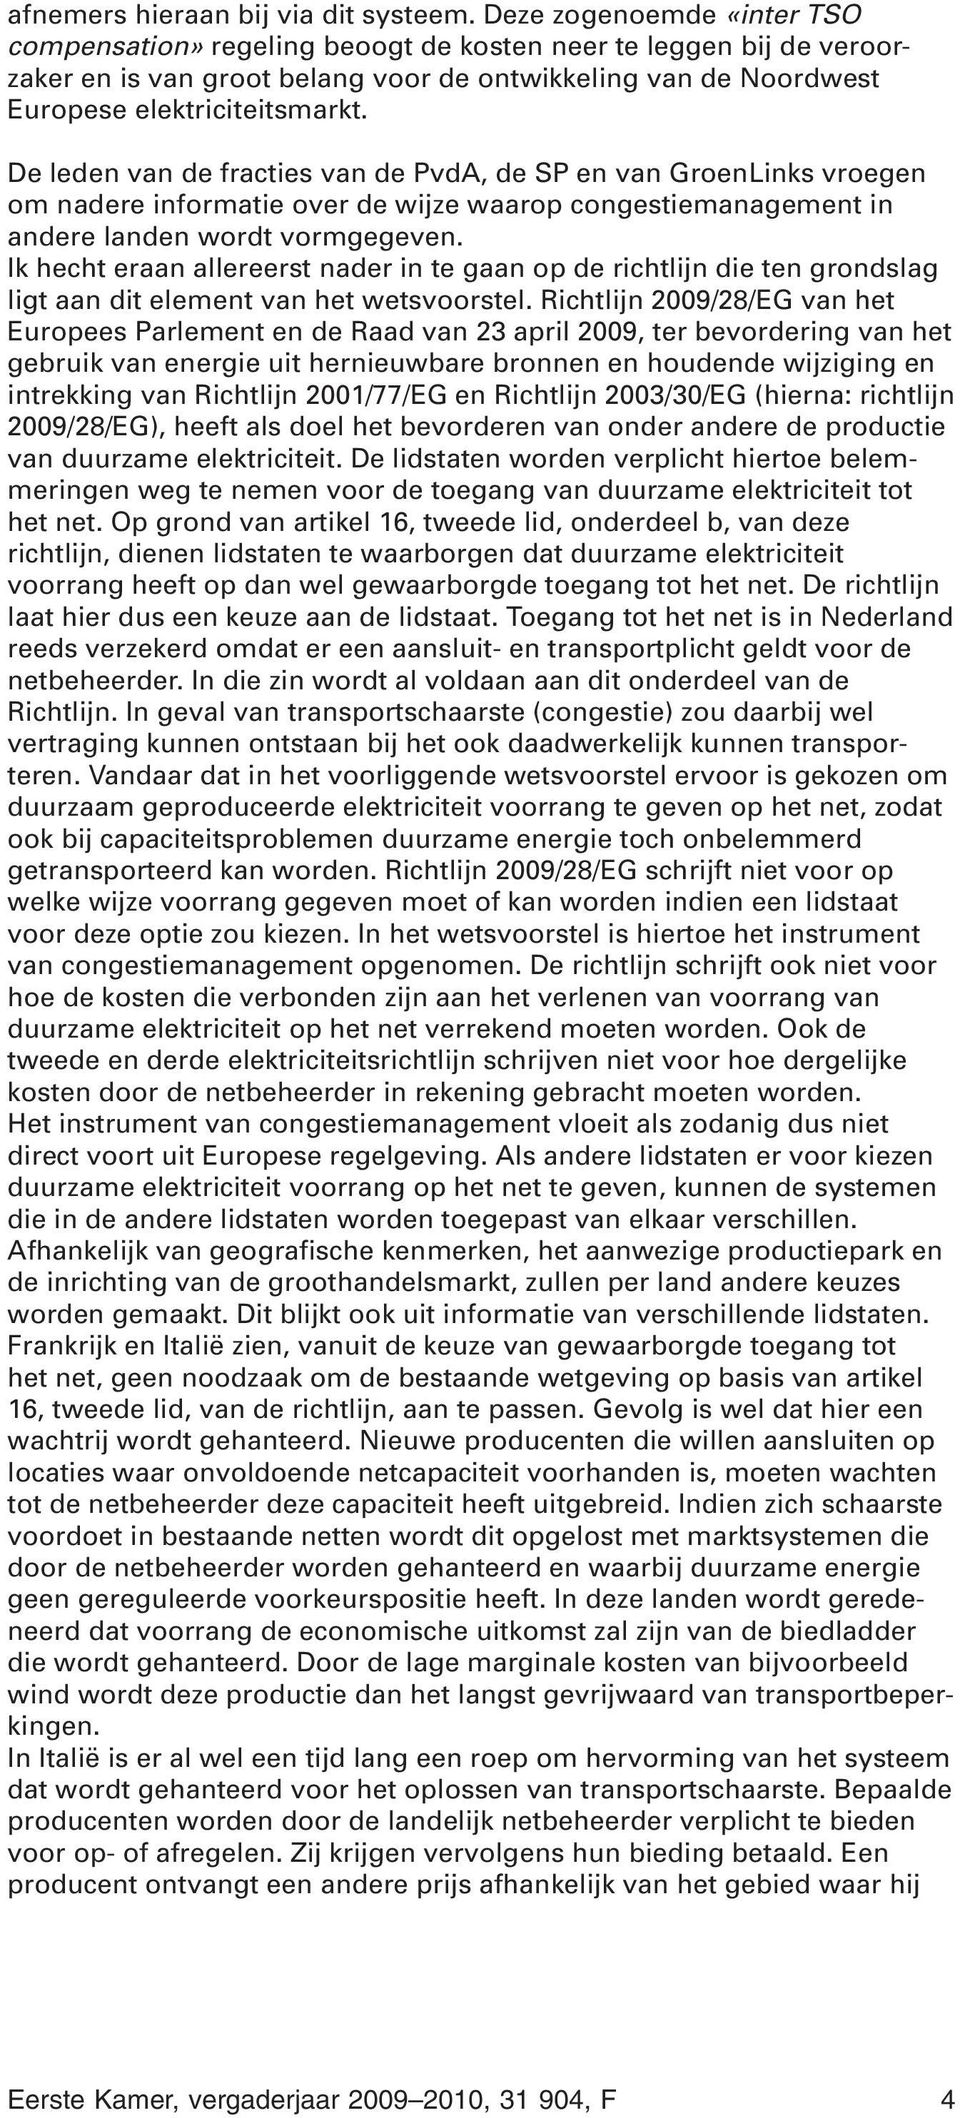 De leden van de fracties van de PvdA, de SP en van GroenLinks vroegen om nadere informatie over de wijze waarop congestiemanagement in andere landen wordt vormgegeven.